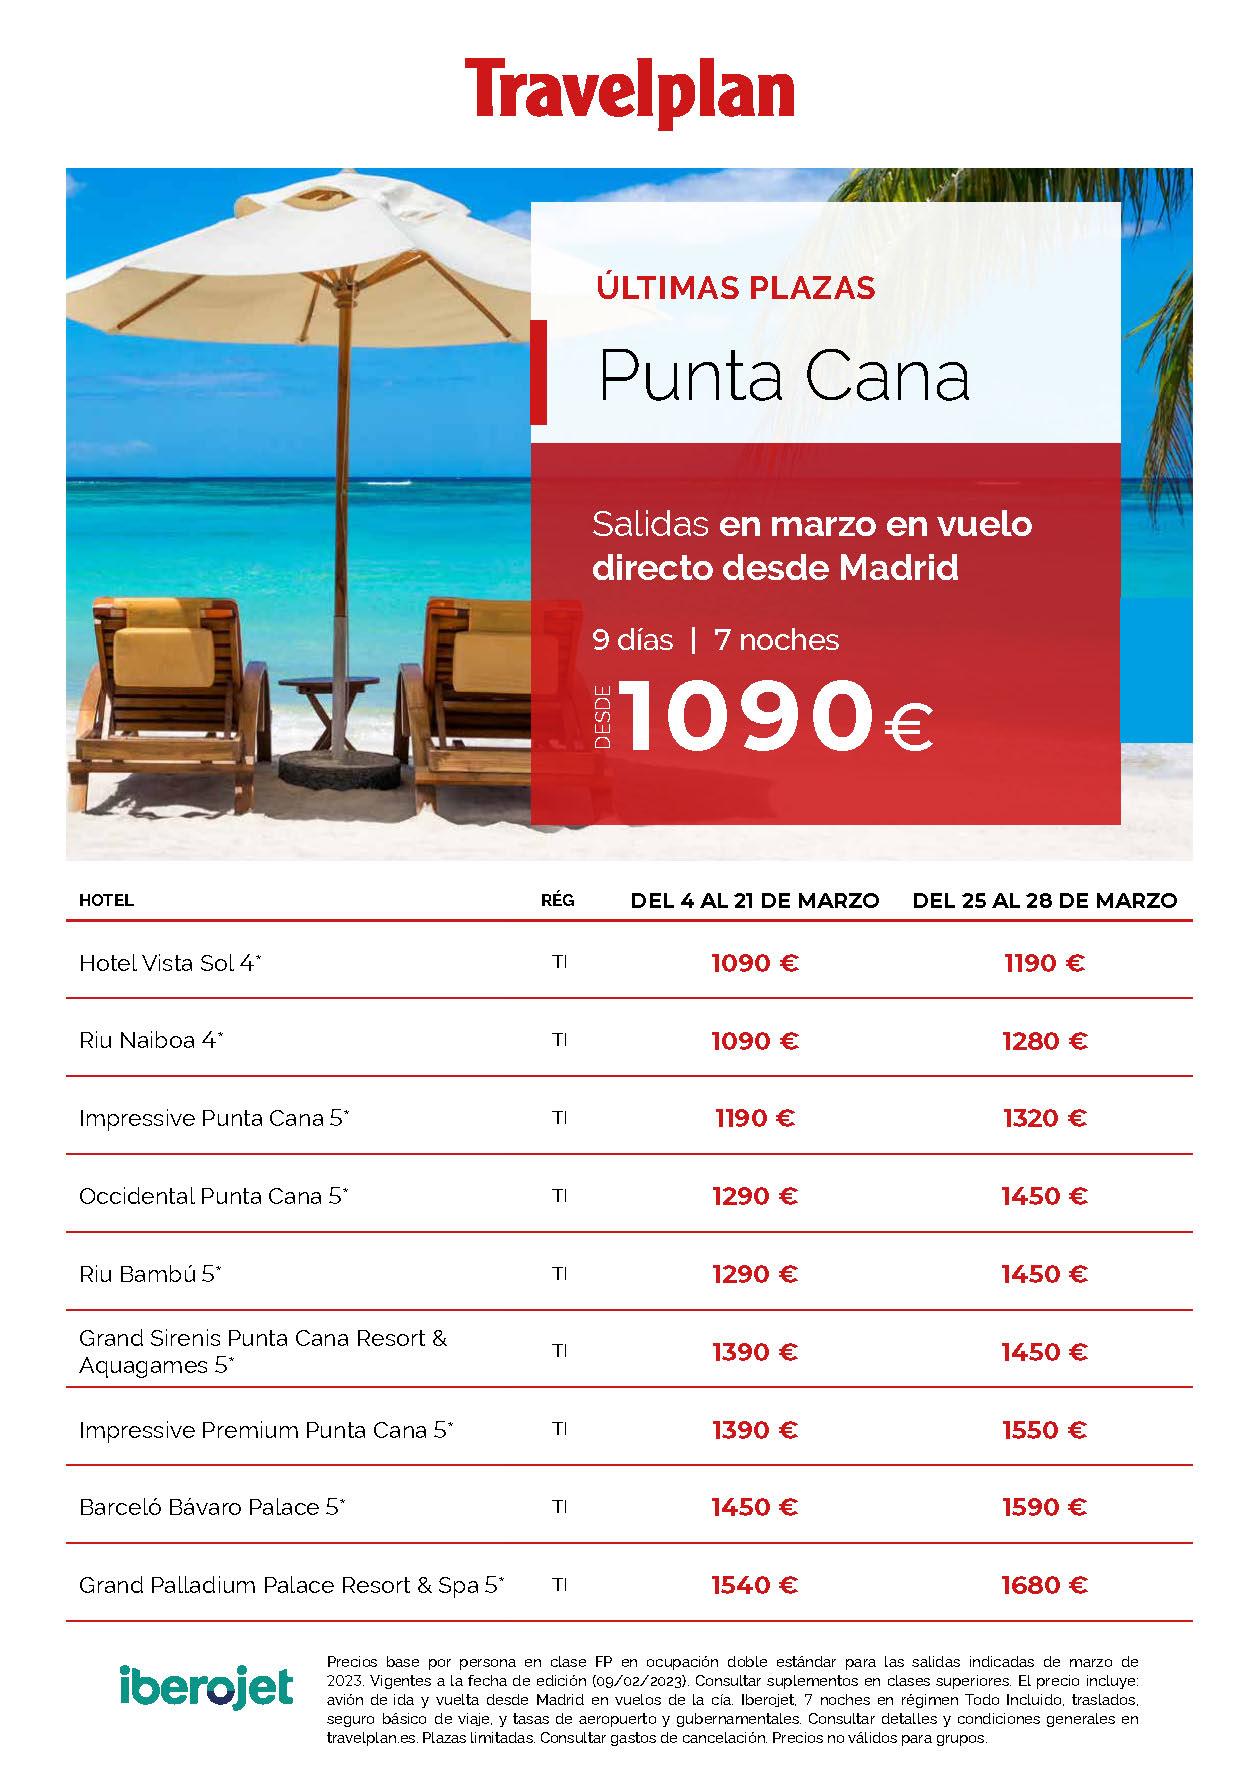 Oferta Travelplan Ultimas Plazas Marzo 2023 en Punta Cana 9 dias Todo Incluido salida en vuelo directo desde Madrid